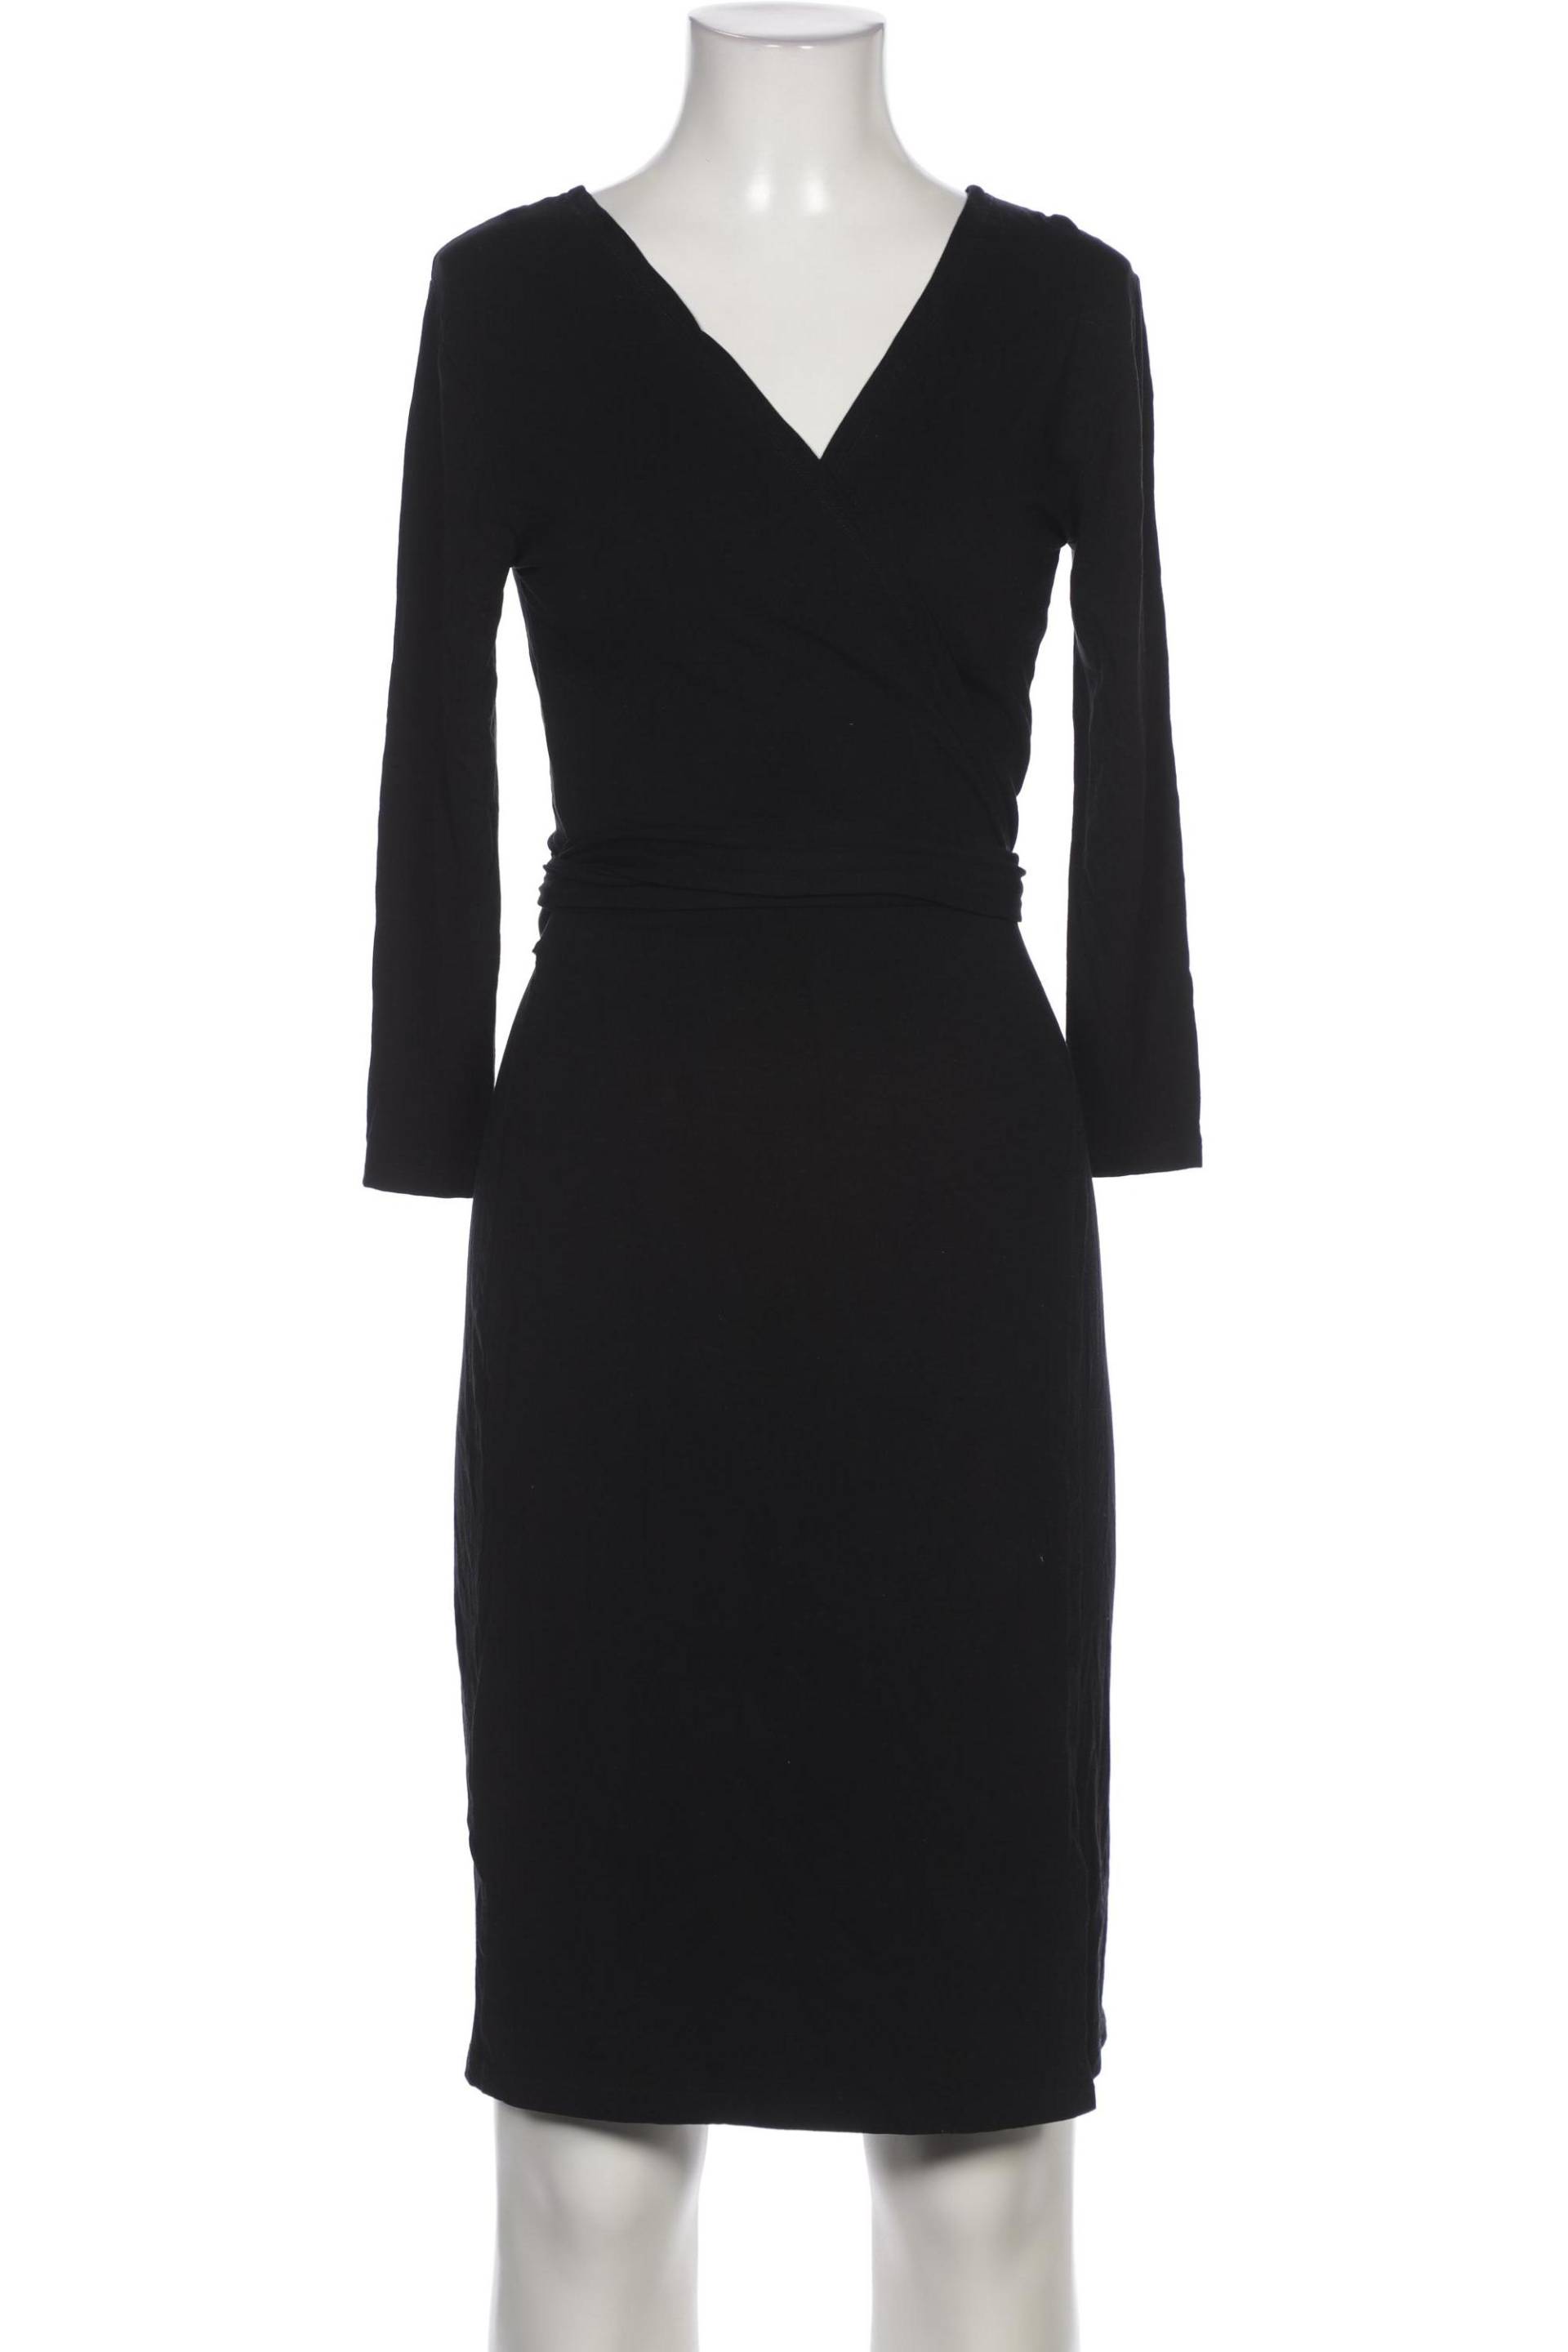 Juvia Damen Kleid, schwarz, Gr. 32 von Juvia